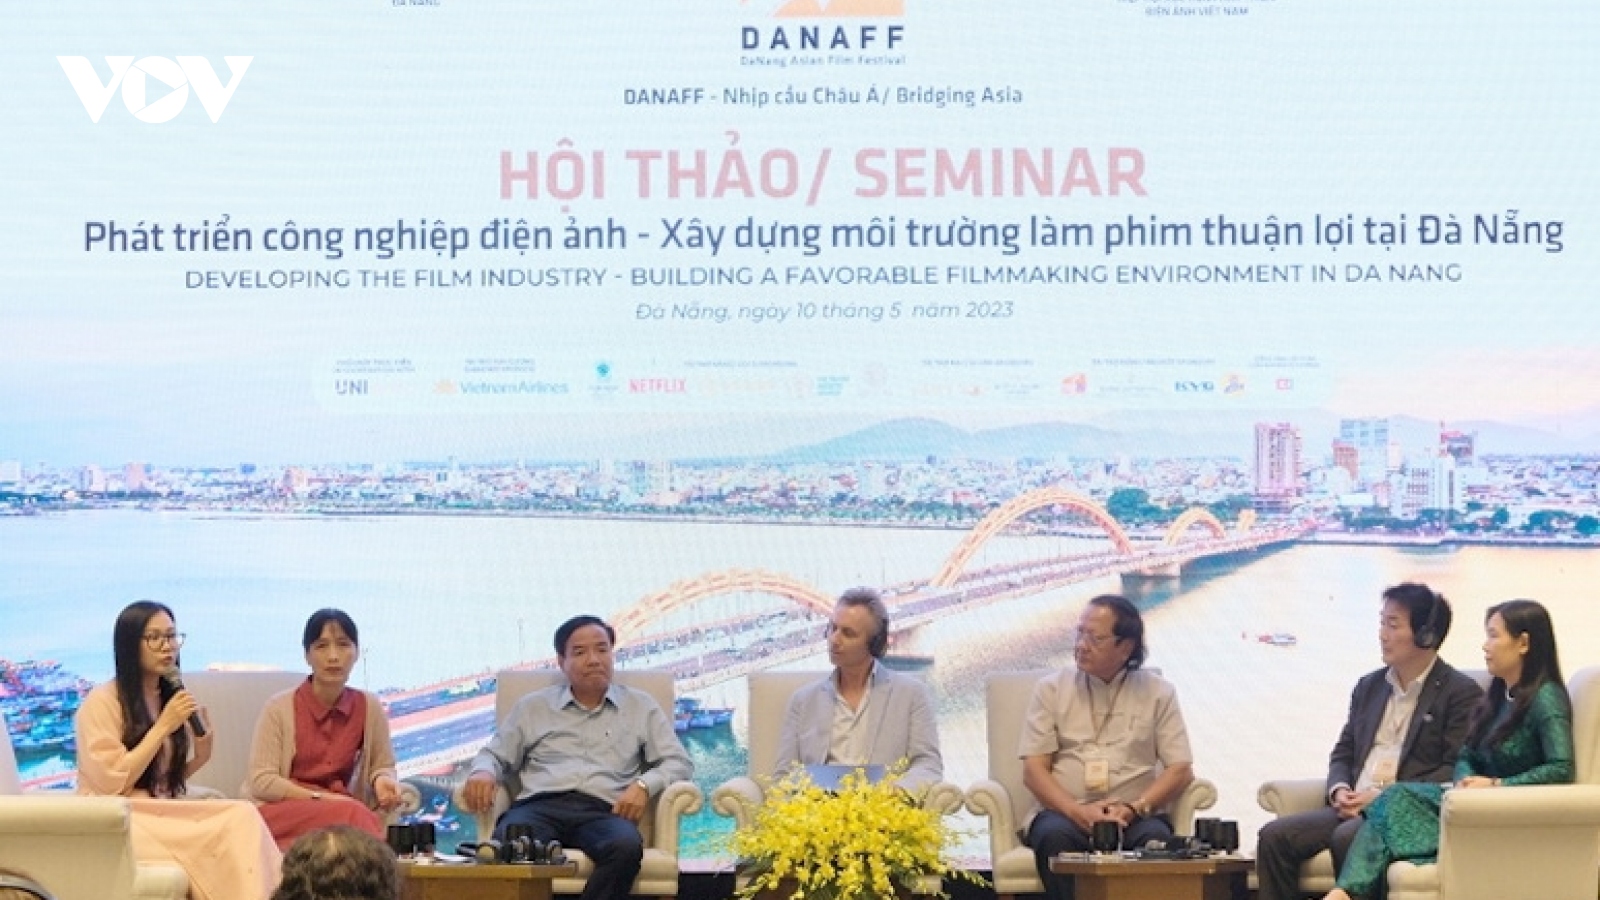 Phát triển công nghiệp điện ảnh - Xây dựng môi trường làm phim thuận lợi tại Đà Nẵng